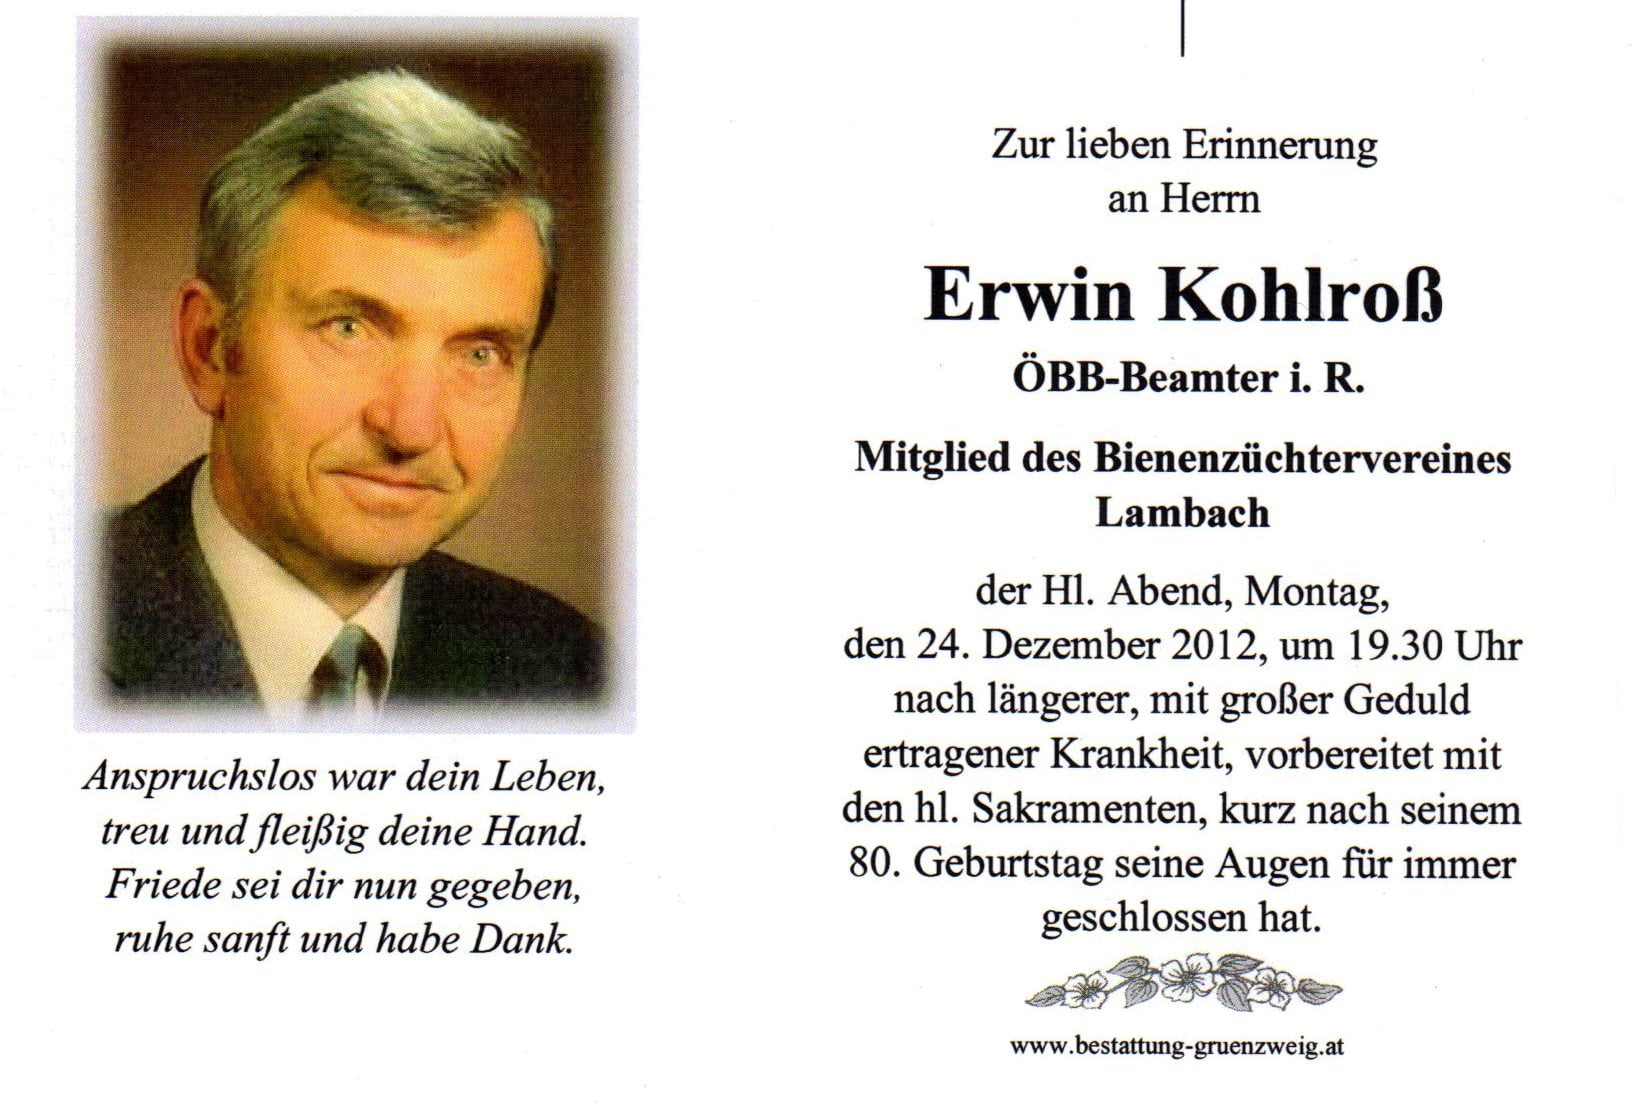 Erwin Kohlroß